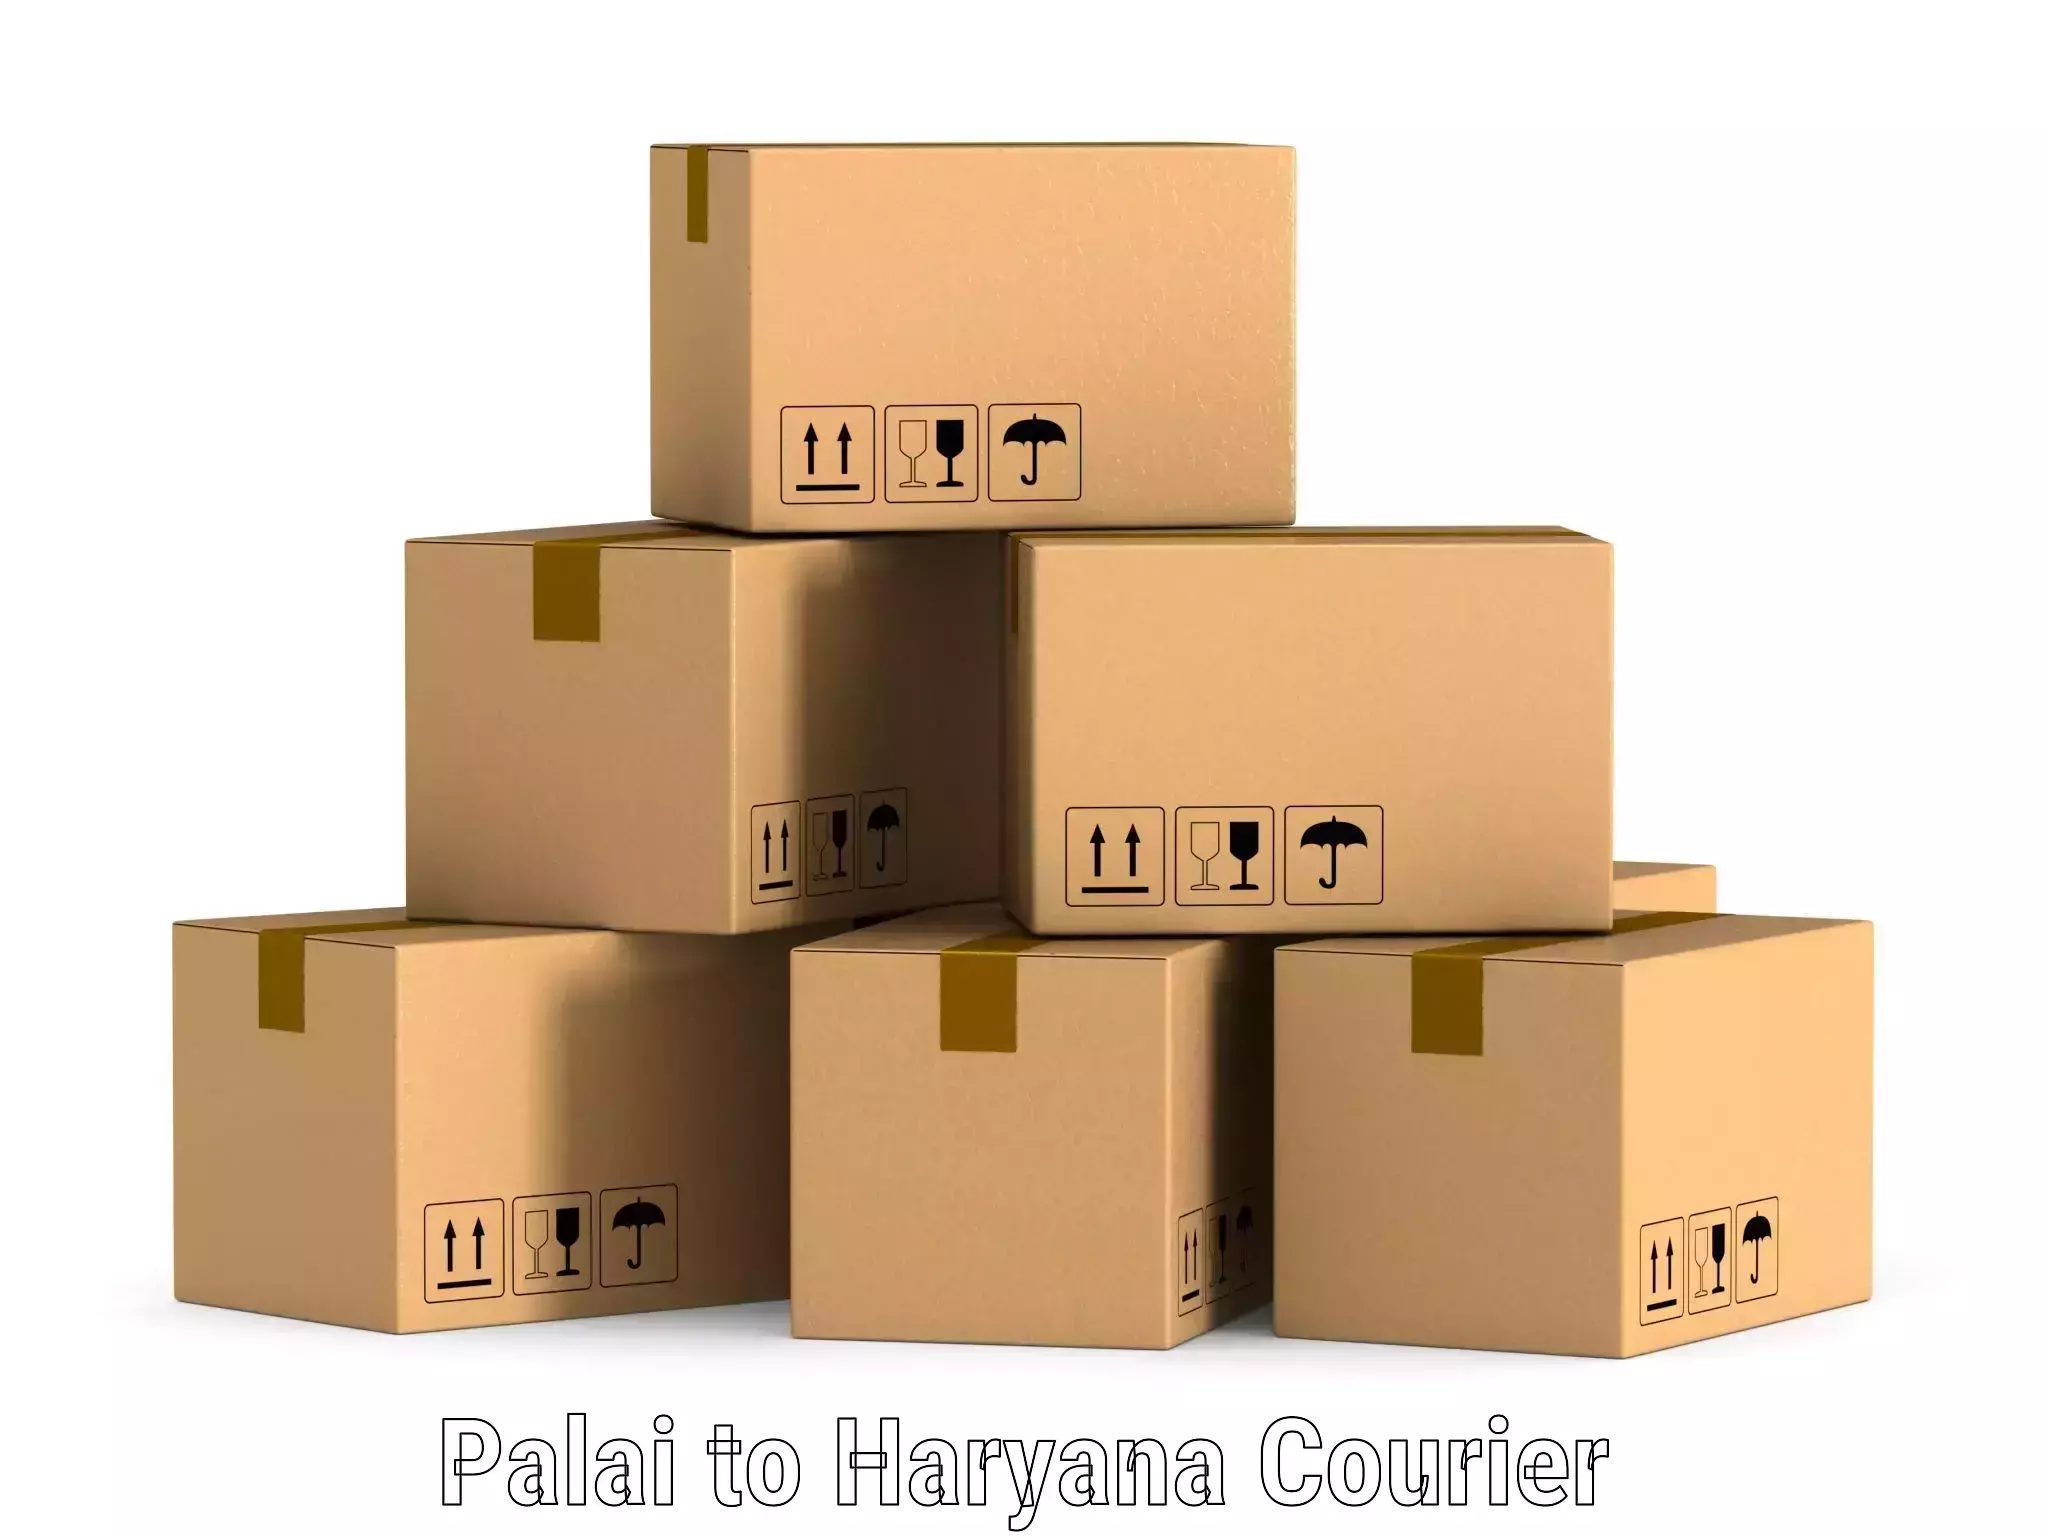 Door-to-door shipment Palai to Narwana